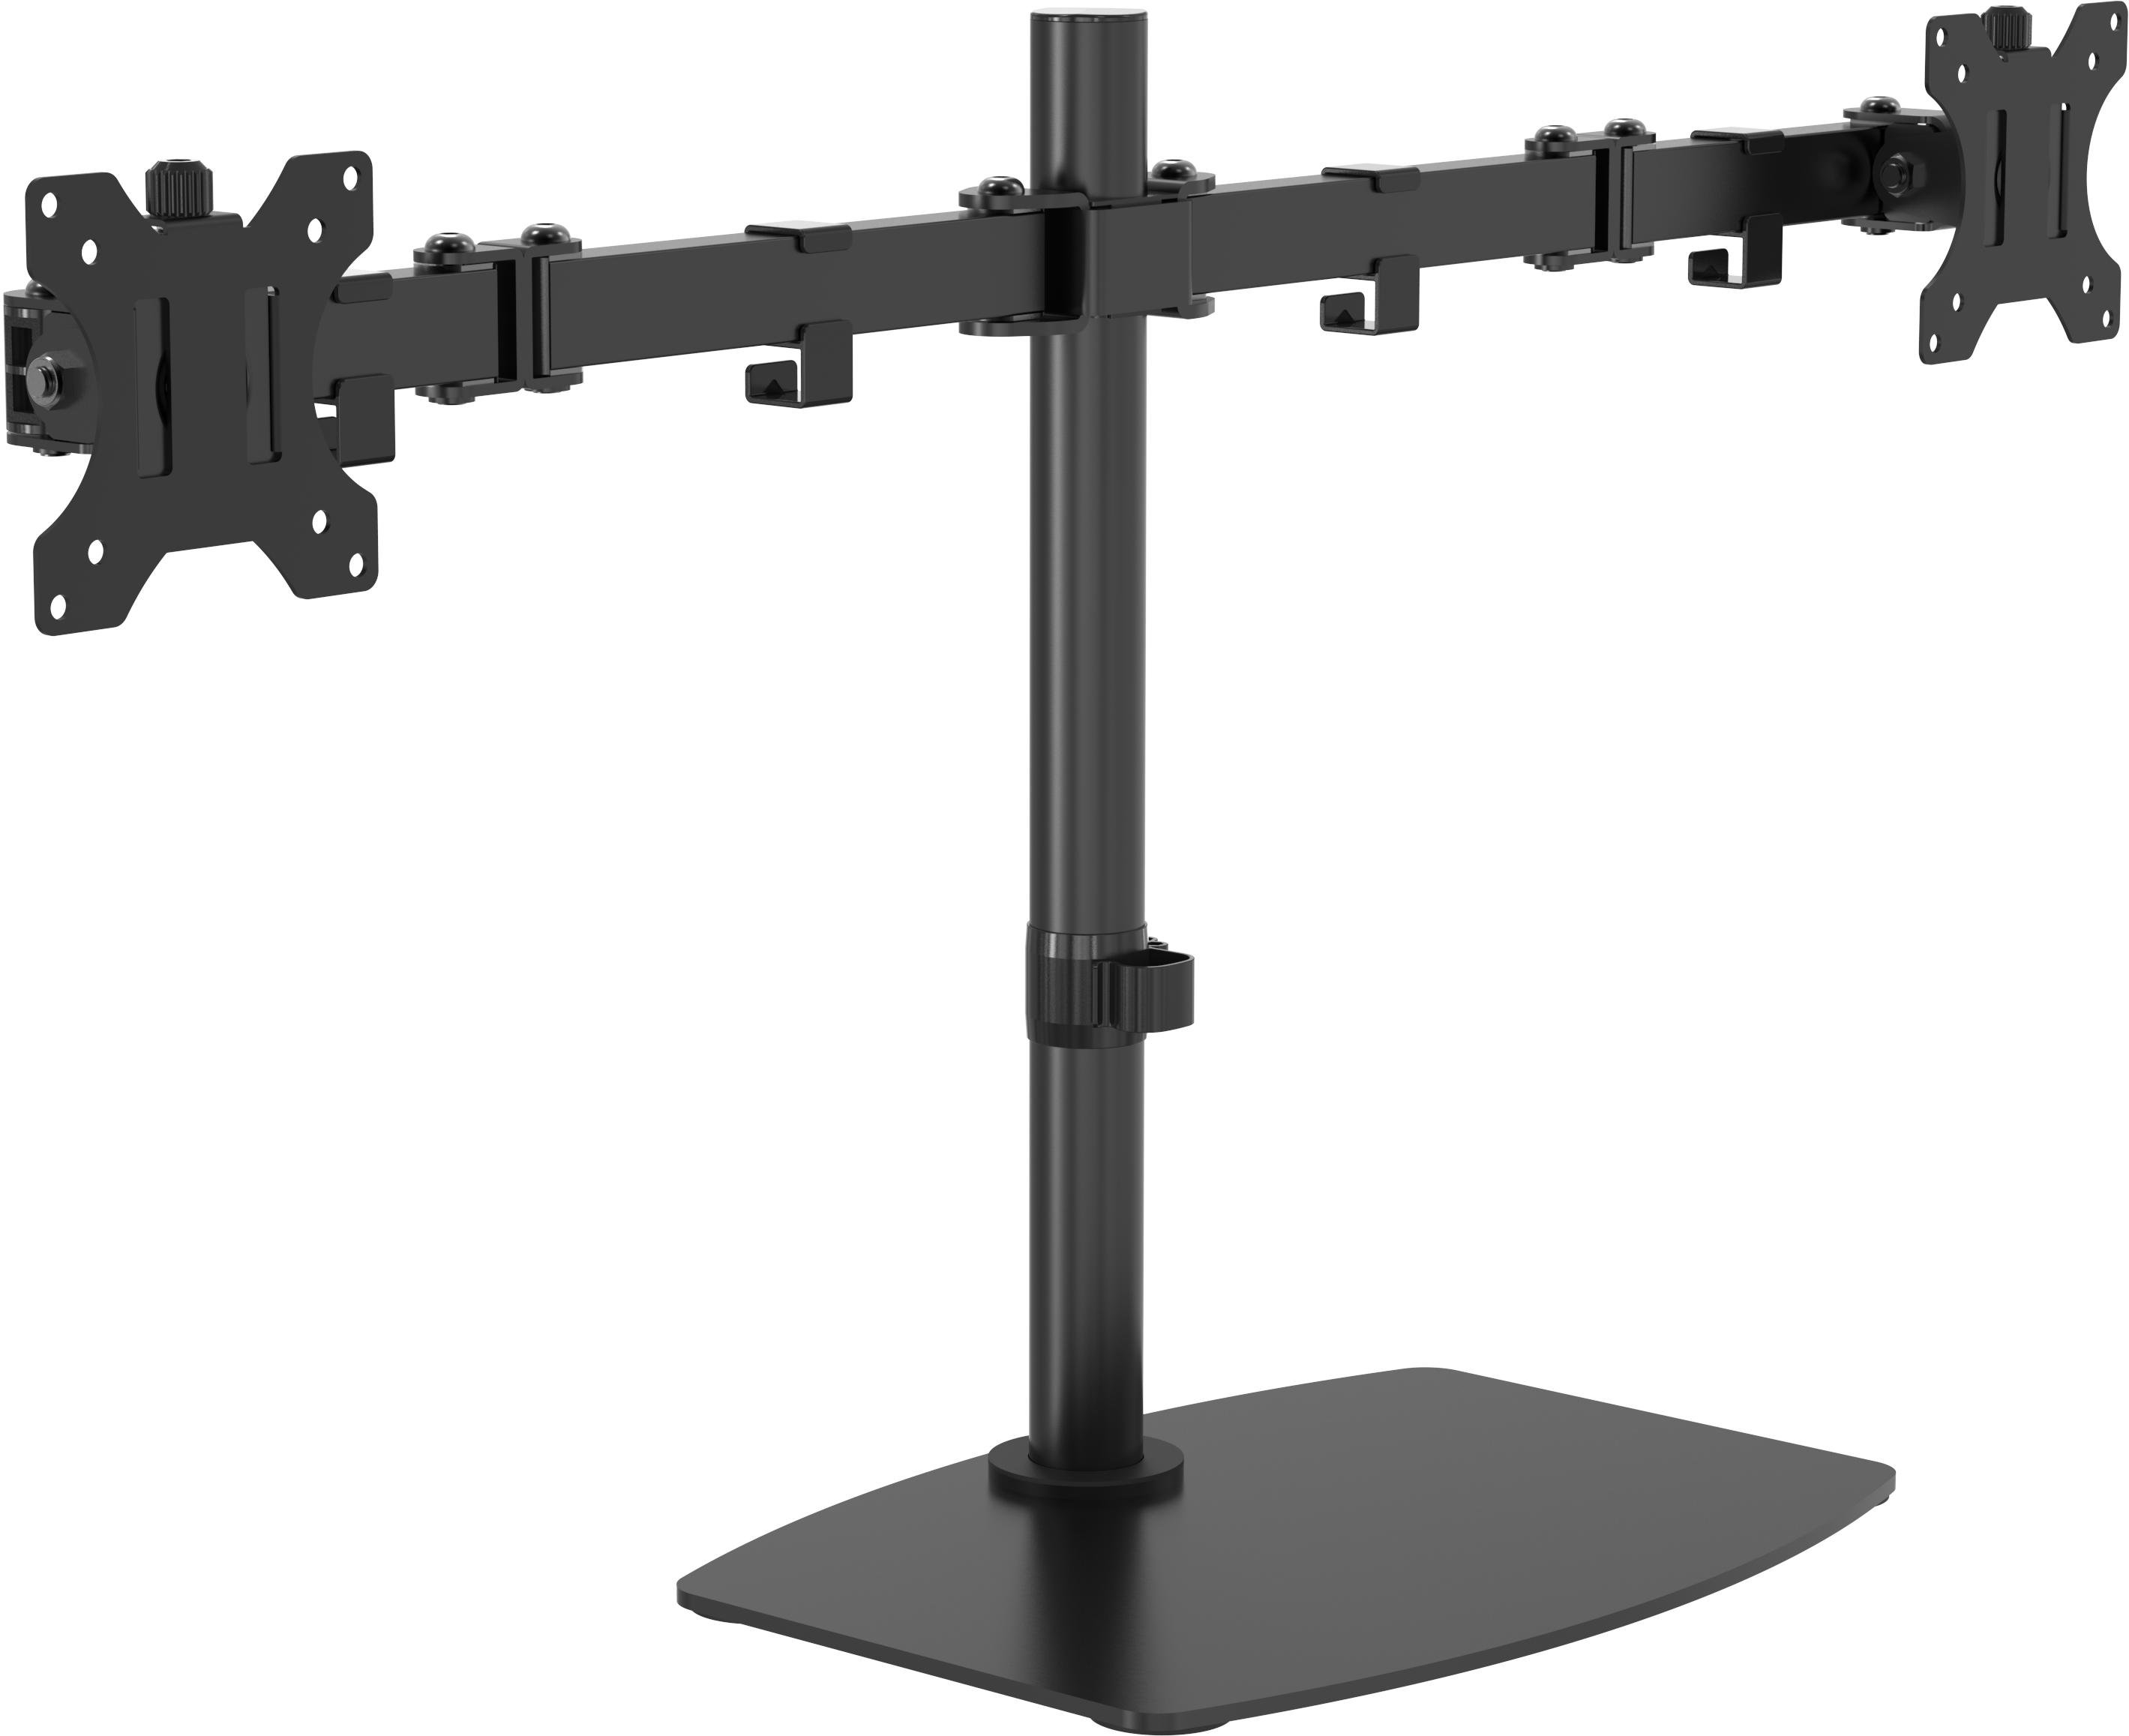 An image showing Soporte de mesa doble para monitores 100 x 100